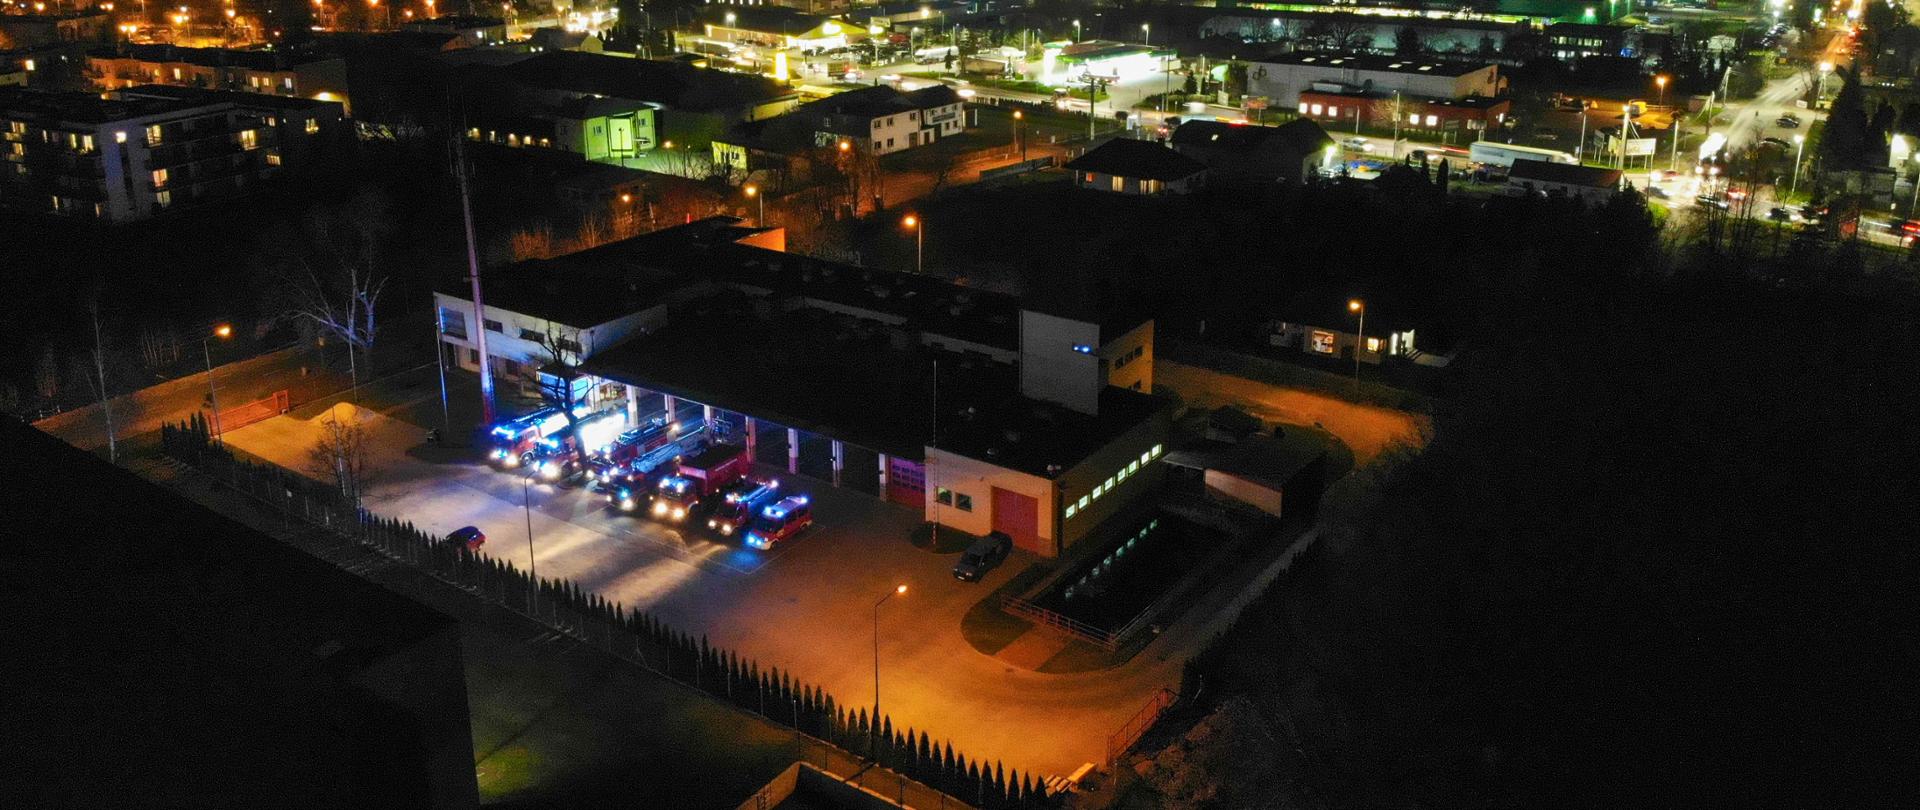 Widok na KP PPS w Grodzisku Maz. z lotu ptaka w nocy. Przed garażami stoją samochody pożarnicze z włączonymi sygnałami błyskowymi. W tle miasto rozświetlone światłami.